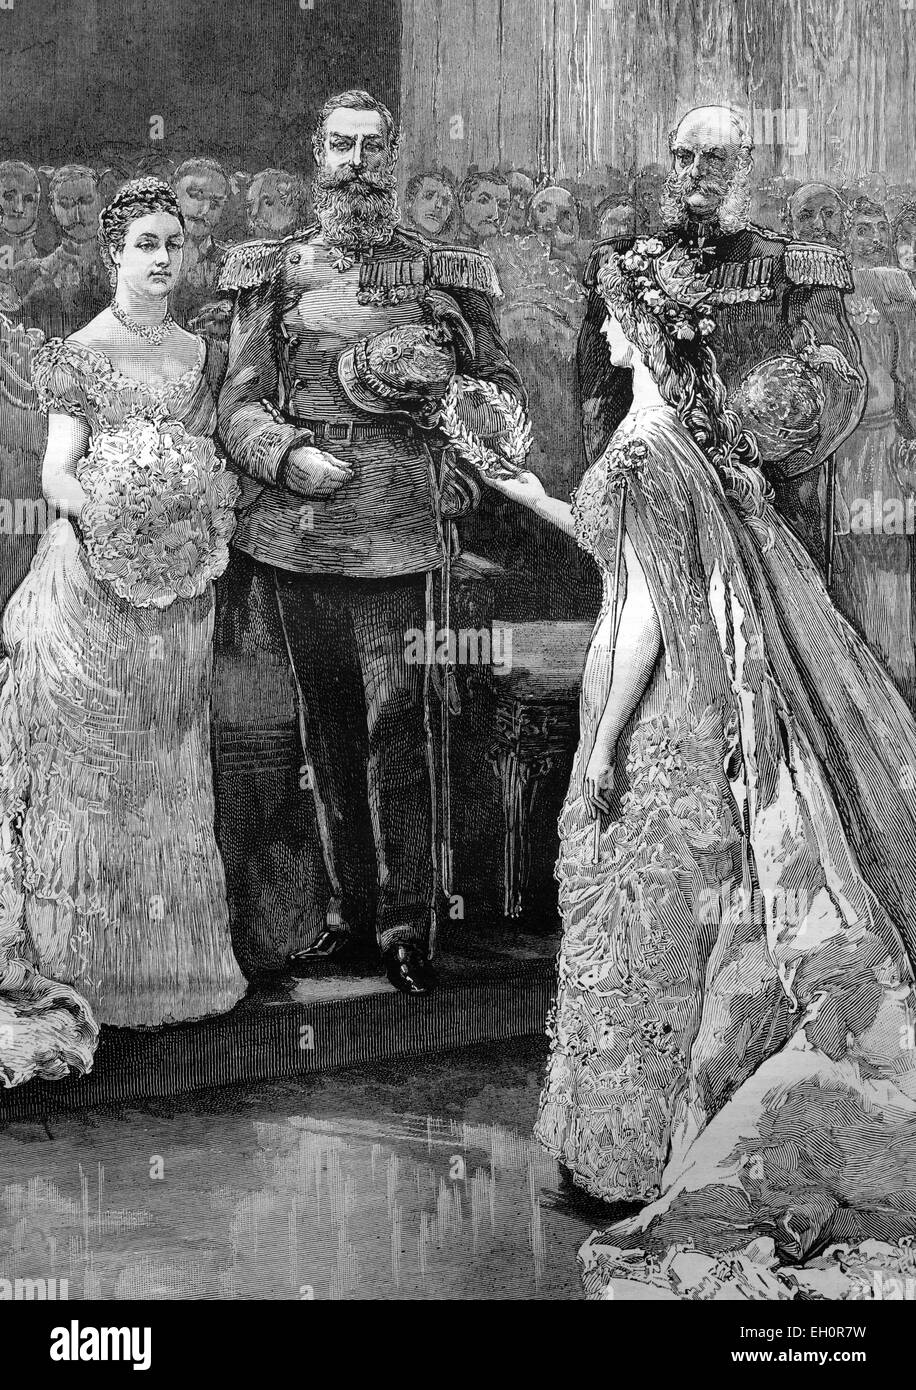 "Die silberne Hochzeit von der Imperial-Prinz und Prinzessin von Deutschland, '' Koenigin Minne'' oder '' Königin der Liebe '' präsentiert einen silbernen Kranz zu Imperial Princess, historische Abbildung, 1884" Stockfoto